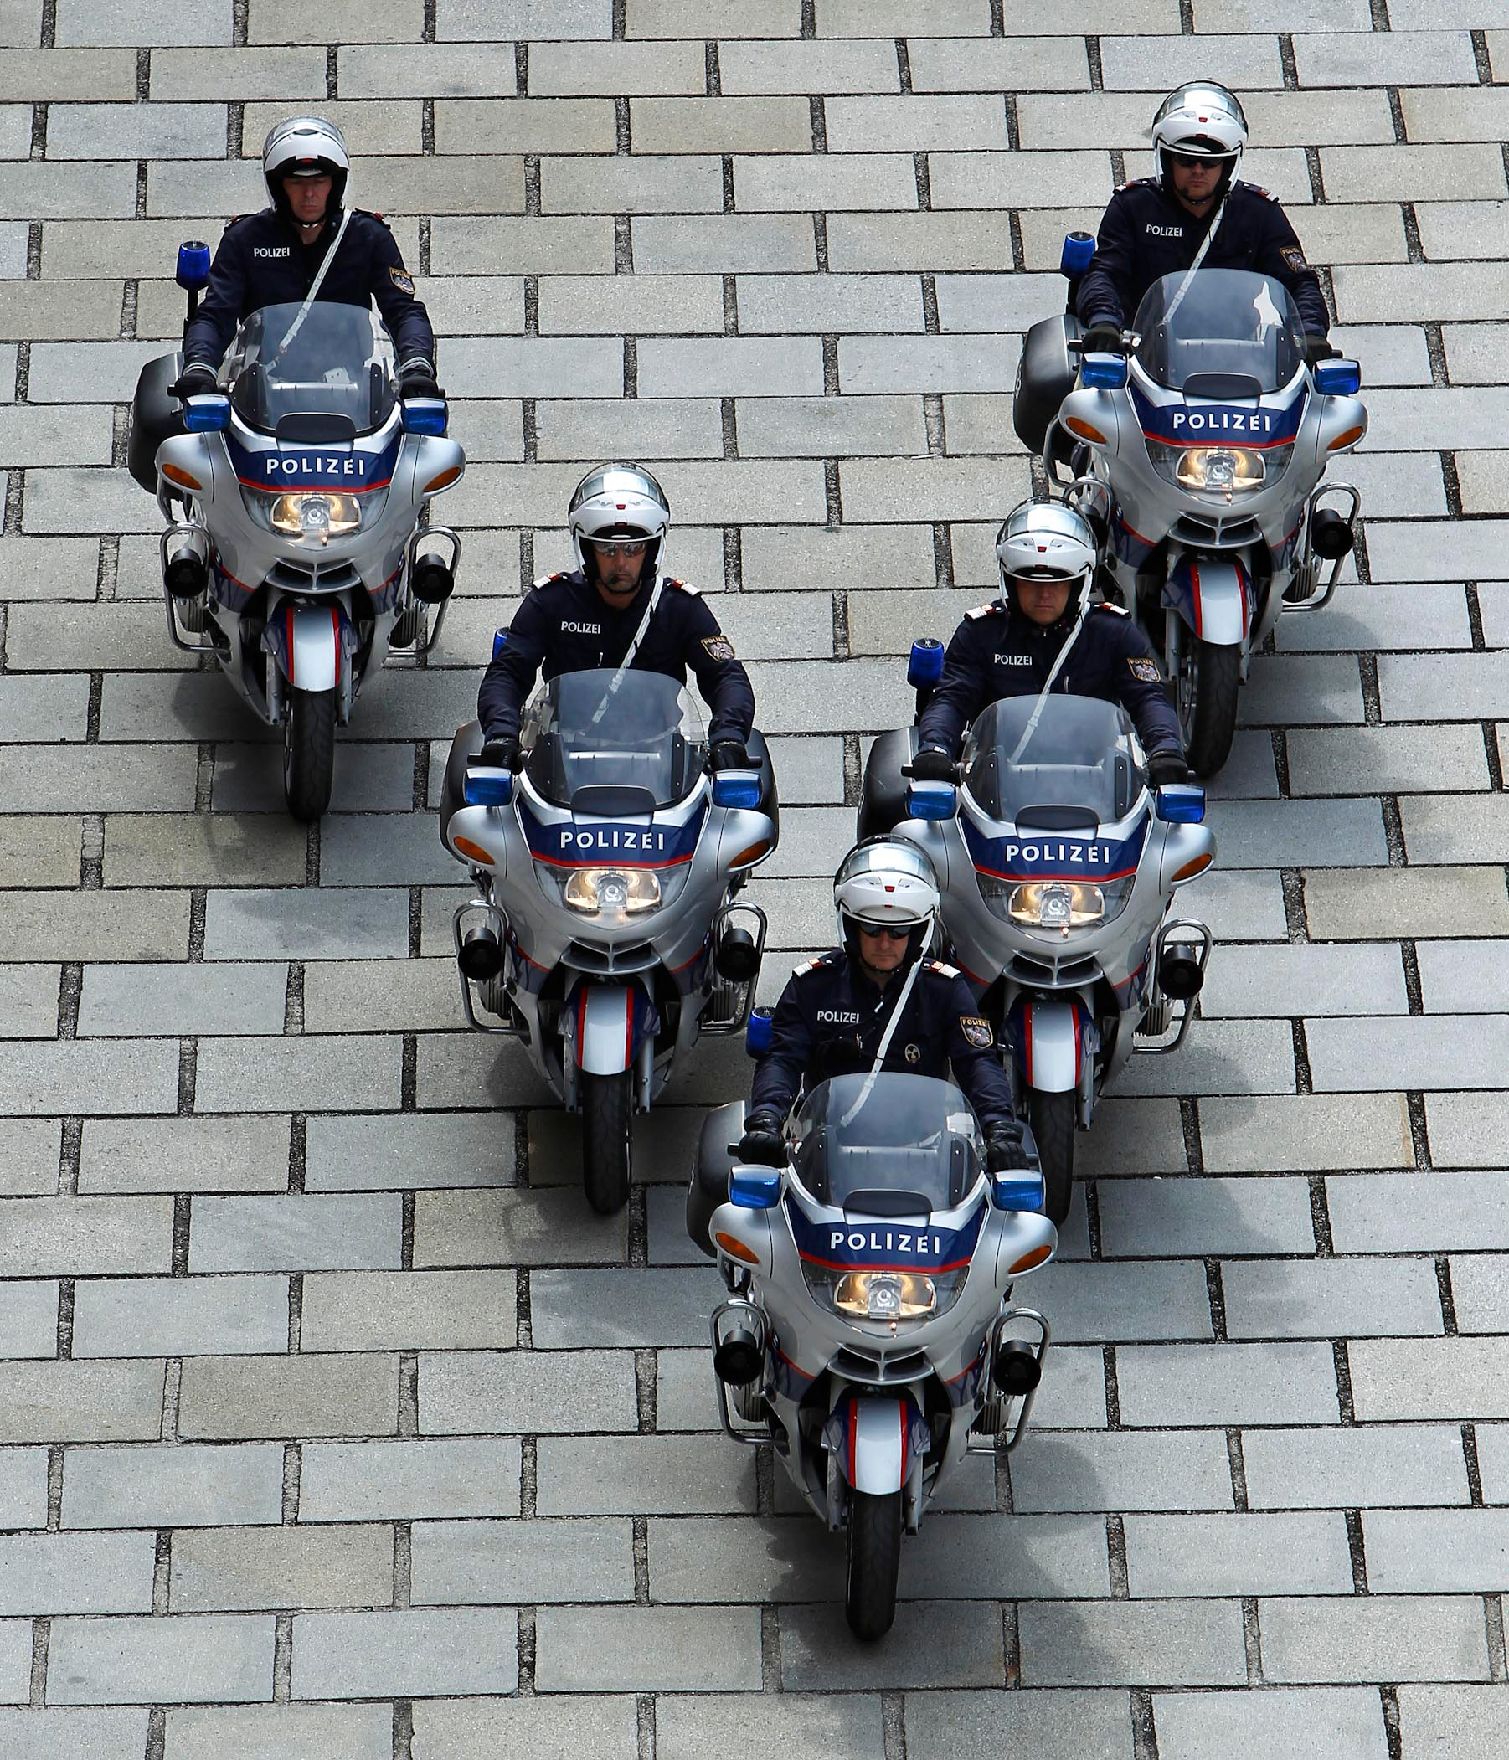 Polizisten mit Motorrädern in V-Formation. Schlagworte: Blaulicht, Eskorte, Fahrzeug, Mann, Mensch, Motorrad, Pflasterstein, Polizei, Sicherheit, Staatsbesuch, Sturzhelm, Uniform, Verkehr